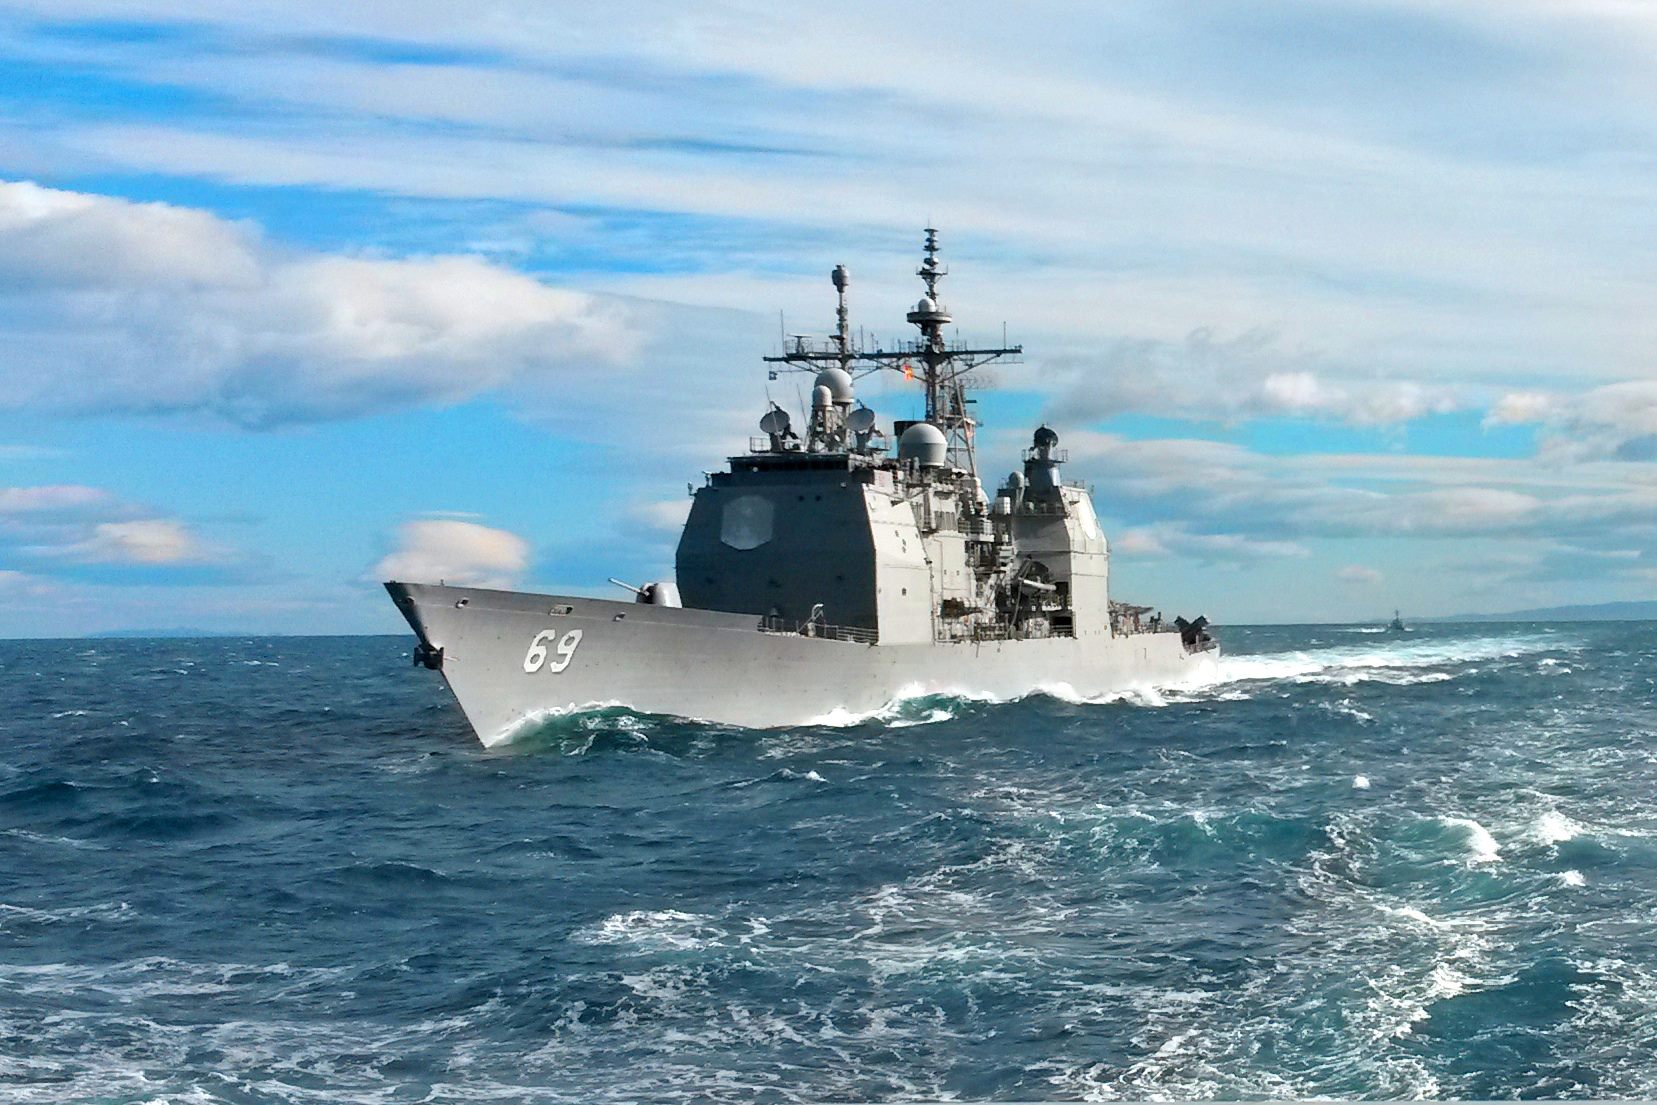 USS VICKSBURG CG-69 am 10.07.2015 im Atlantik Bild: U.S. Navy